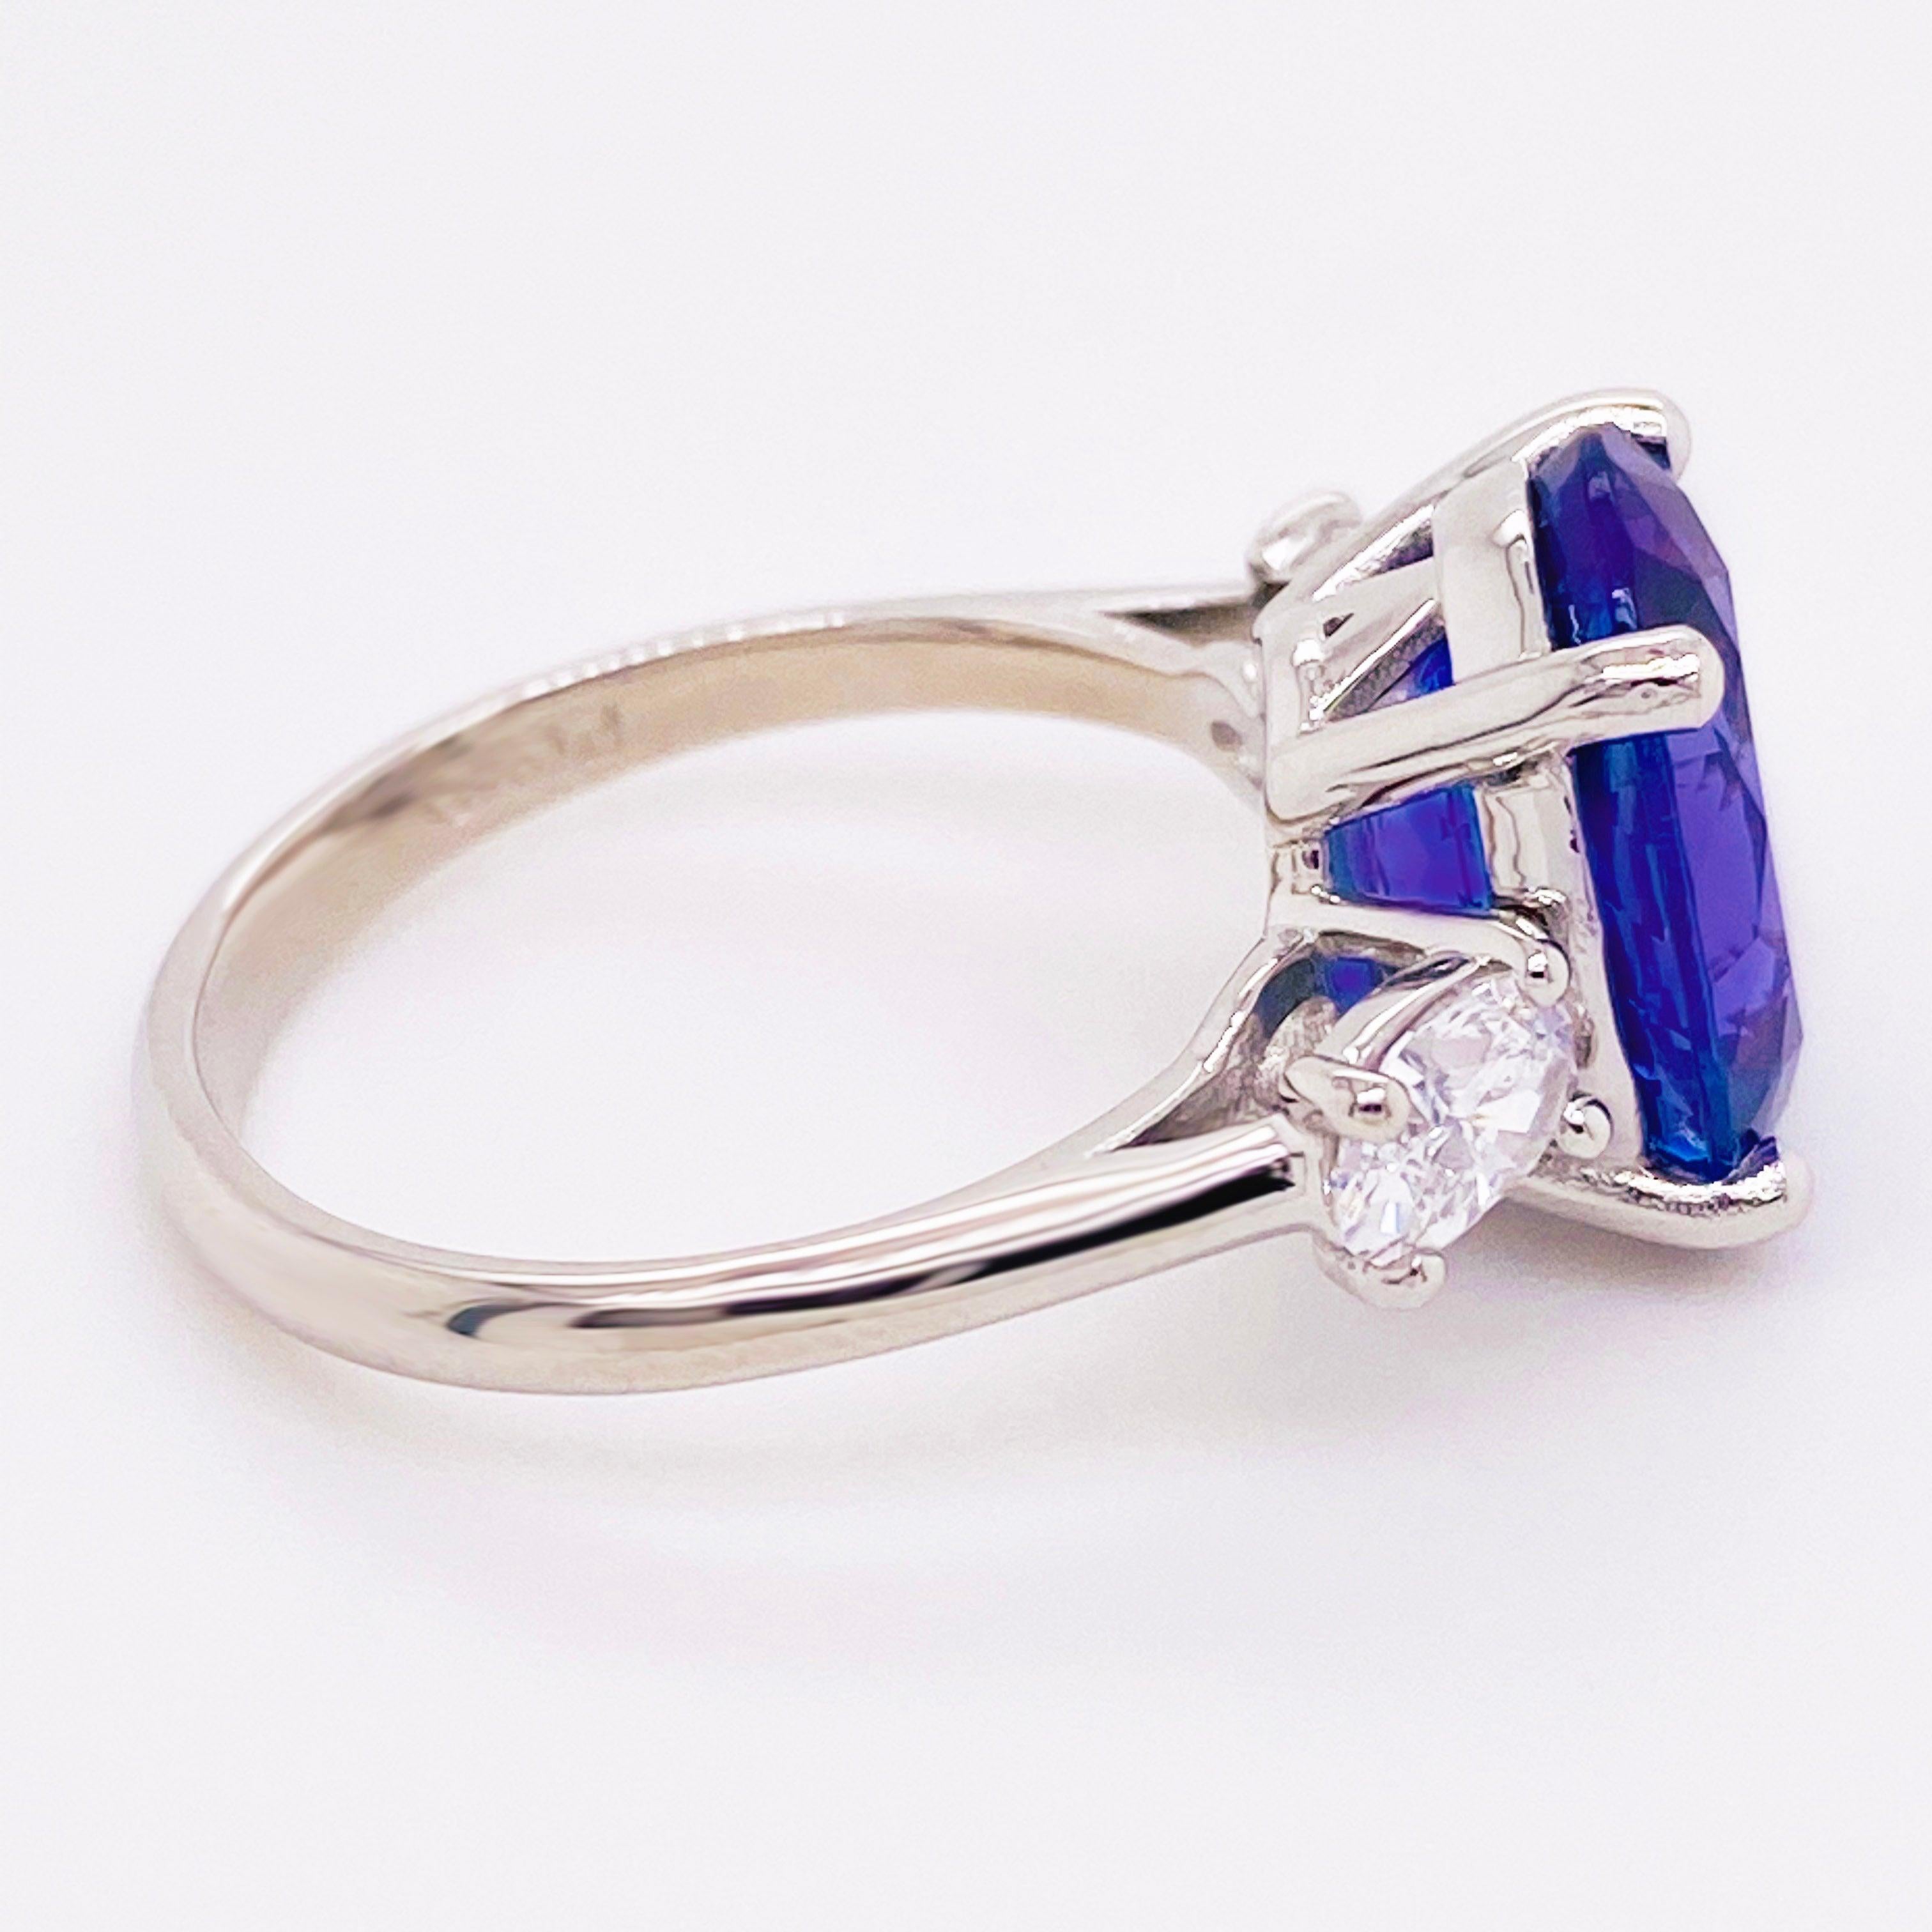 For Sale:  Tanzanite Diamond Ring, 4.77 Carat Tanz, 14 Karat Gold Three-Stone Ring 4